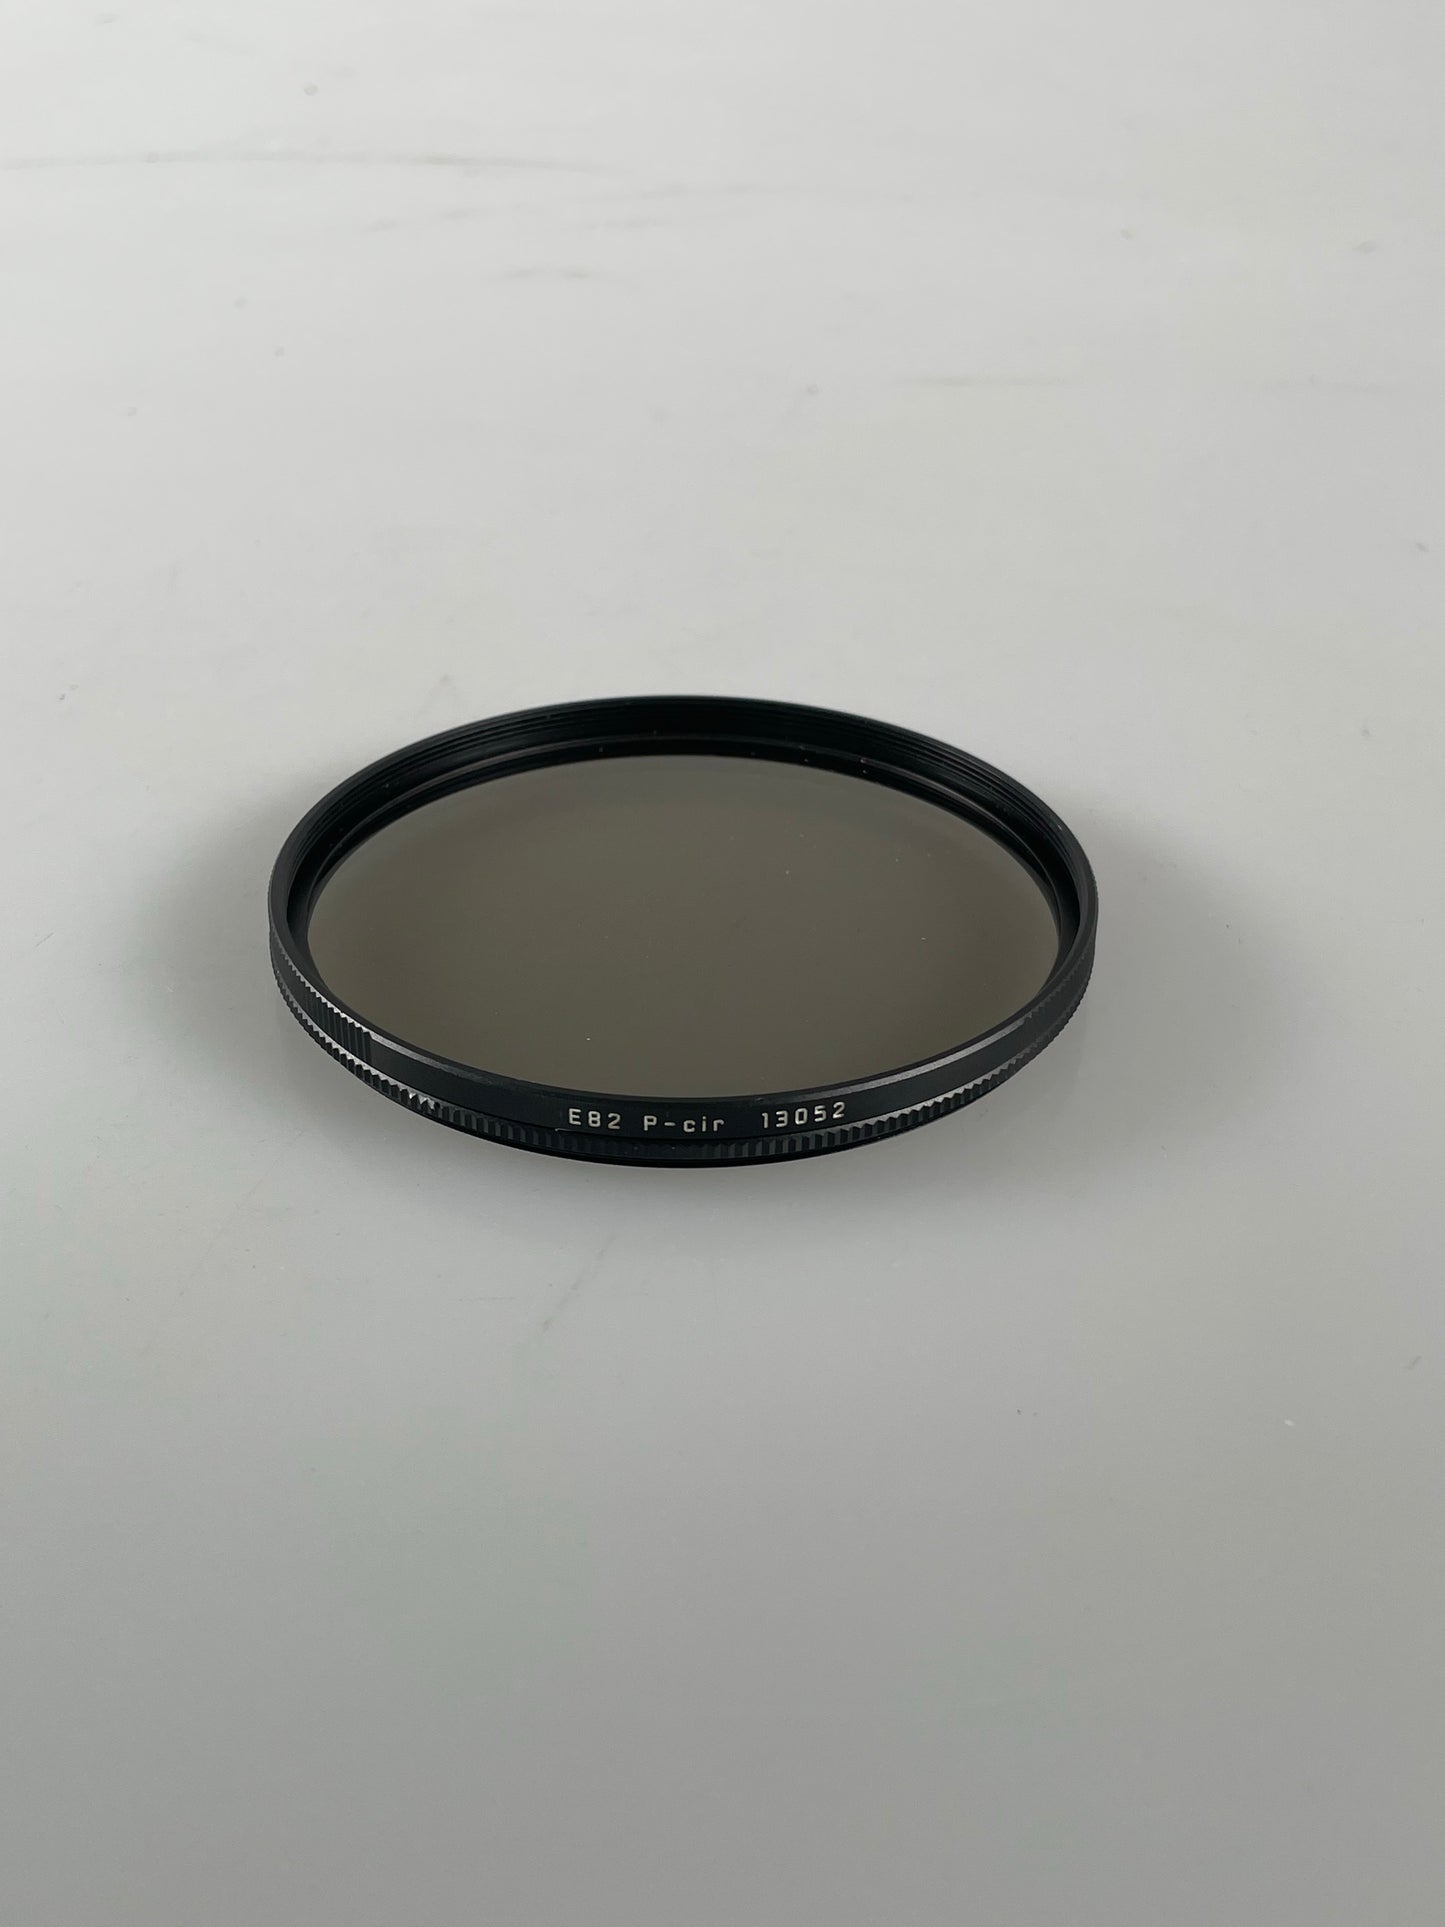 Leica E82 82mm Circular Polarization Filter Black #13052 in box